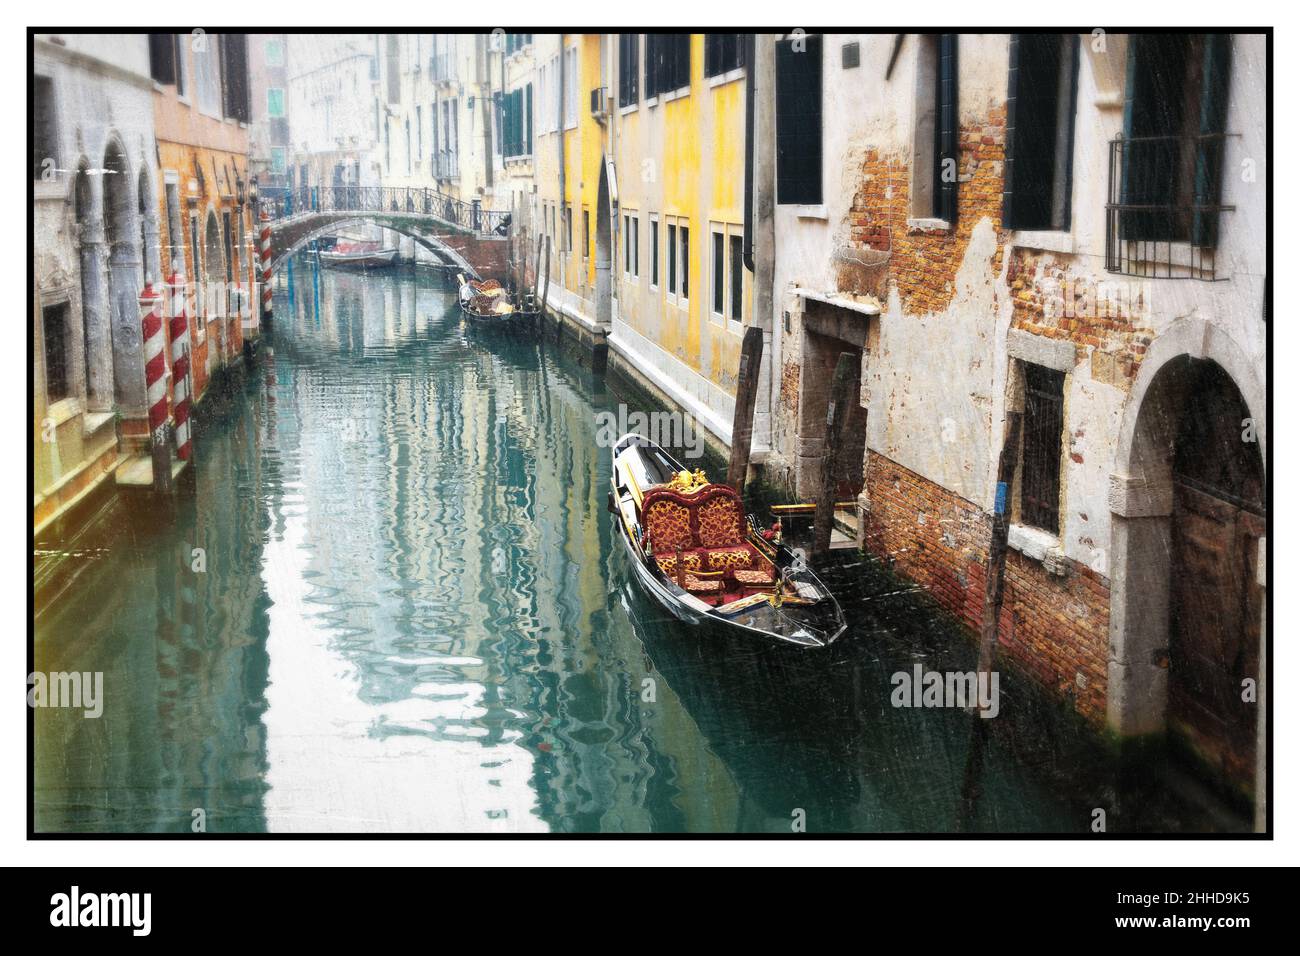 Romantici canali veneziani. Antiche stradine di Venezia. Foto dai toni seppia in stile retrò. Italia Foto Stock